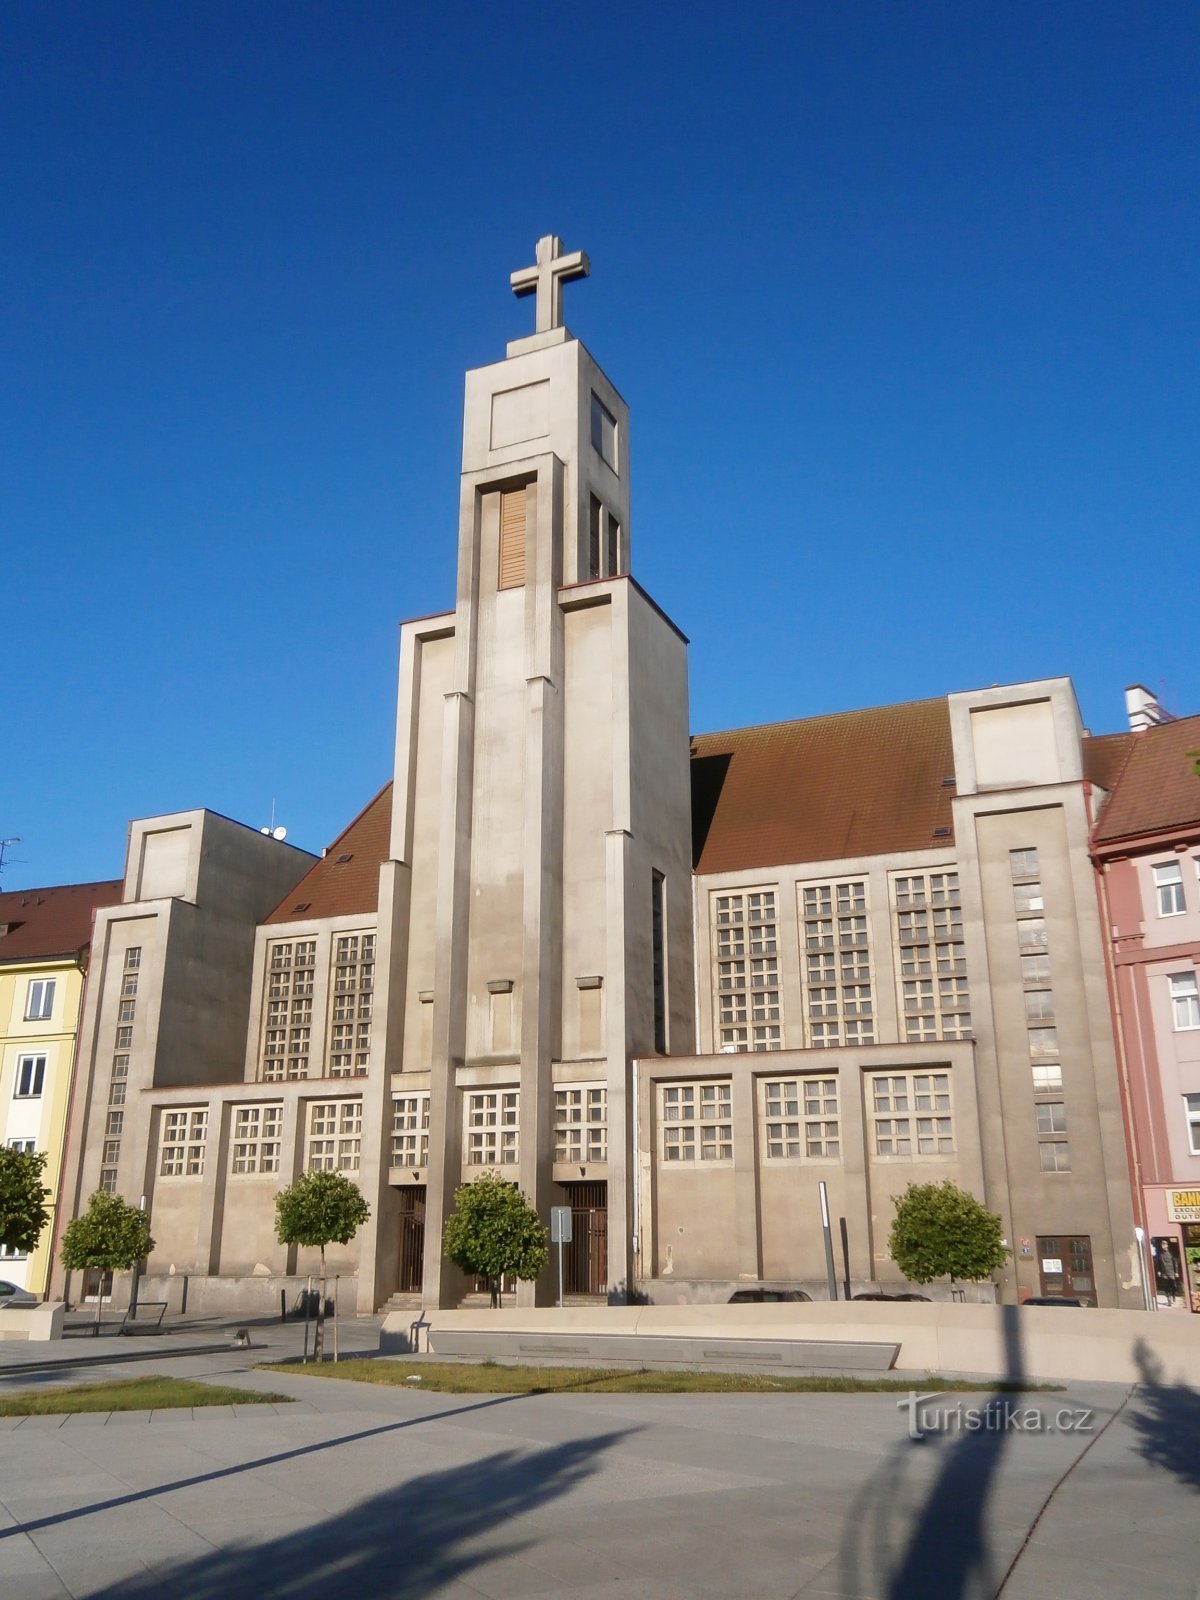 Nhà thờ Trái tim thiêng liêng của Chúa (Hradec Králové, 25.6.2017/XNUMX/XNUMX)